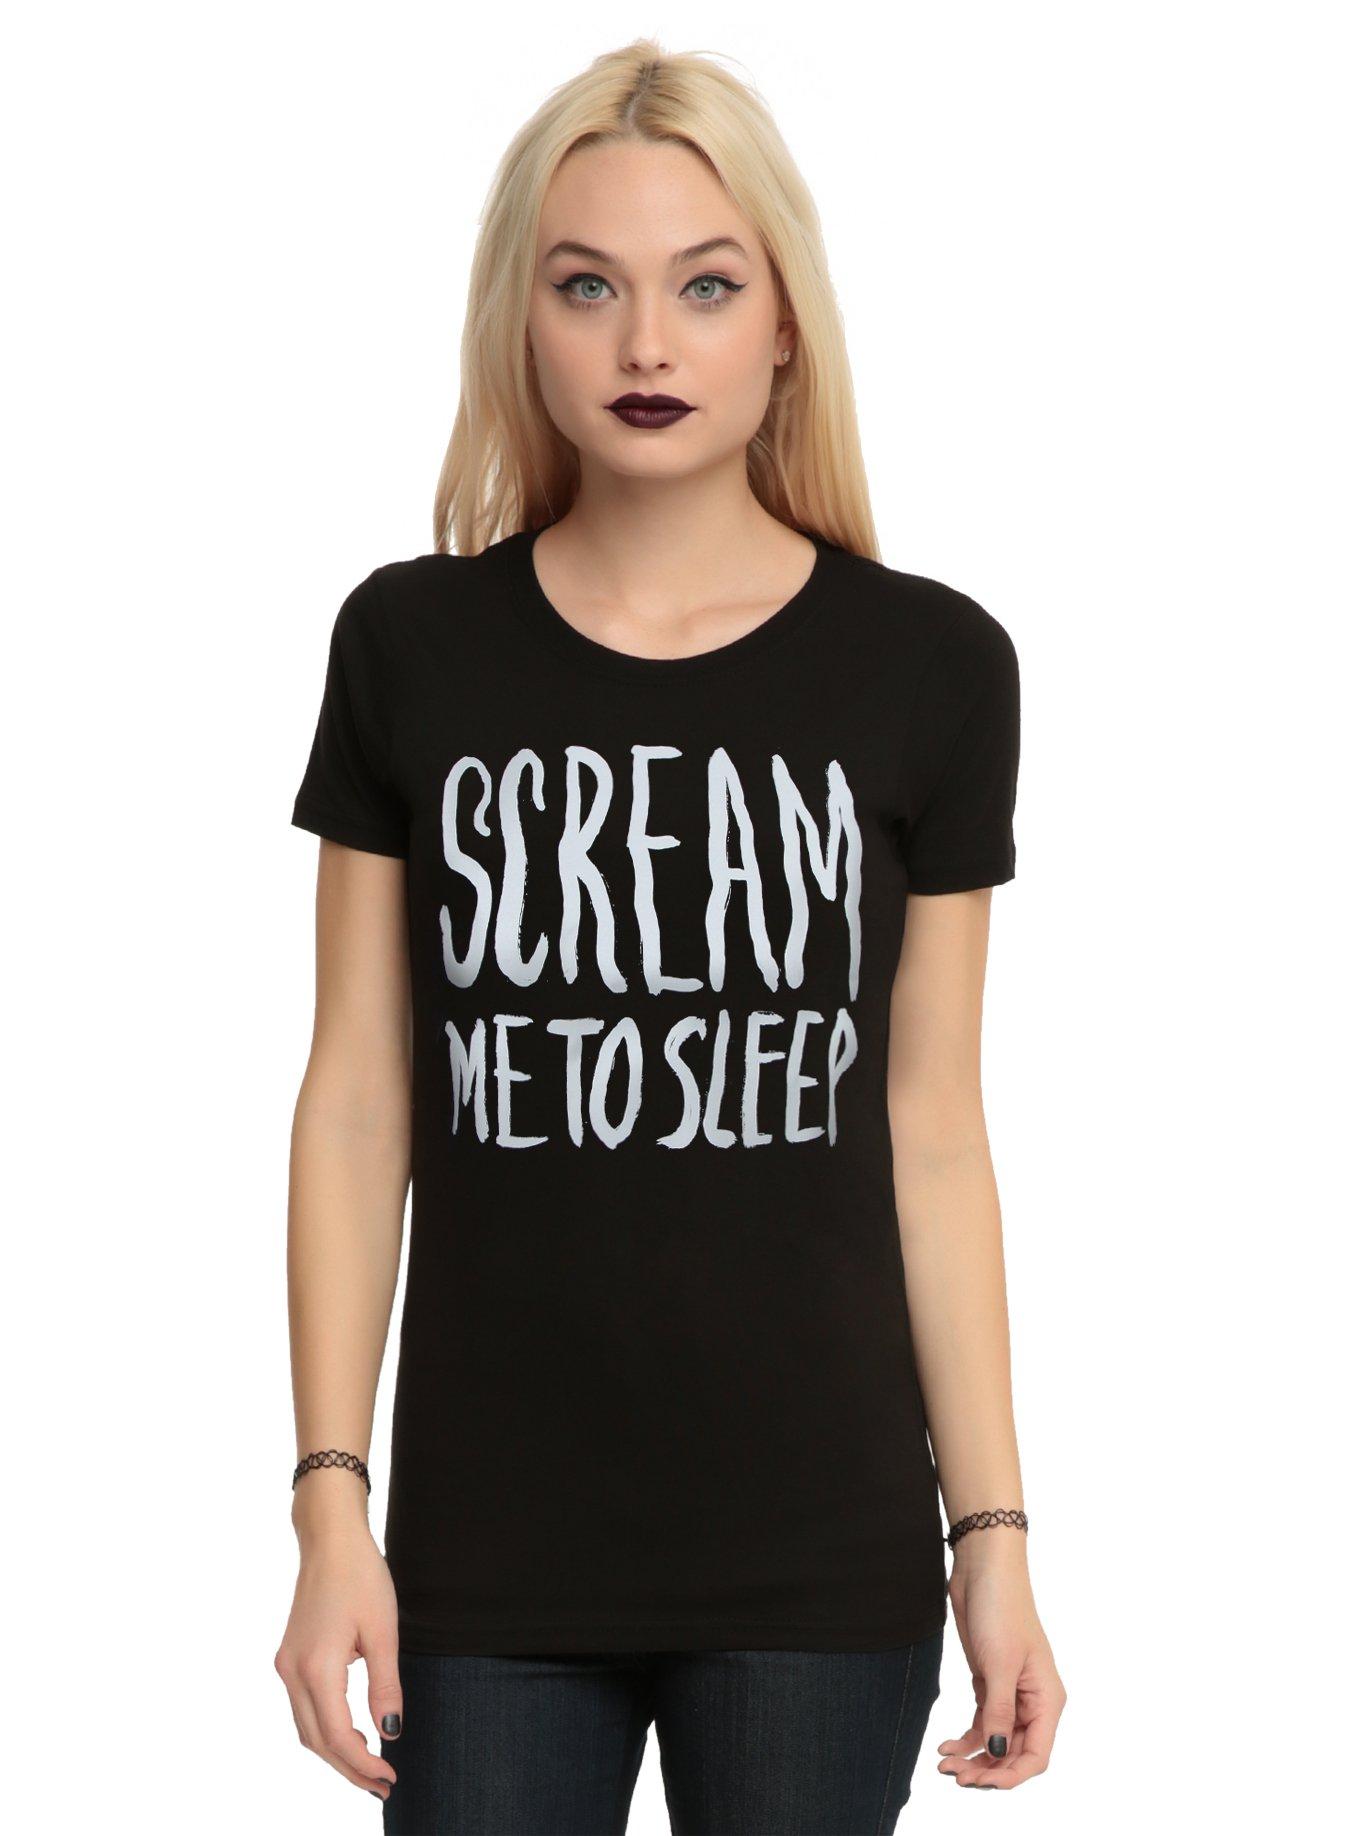 Scream Me To Sleep Girls T-Shirt | Hot Topic